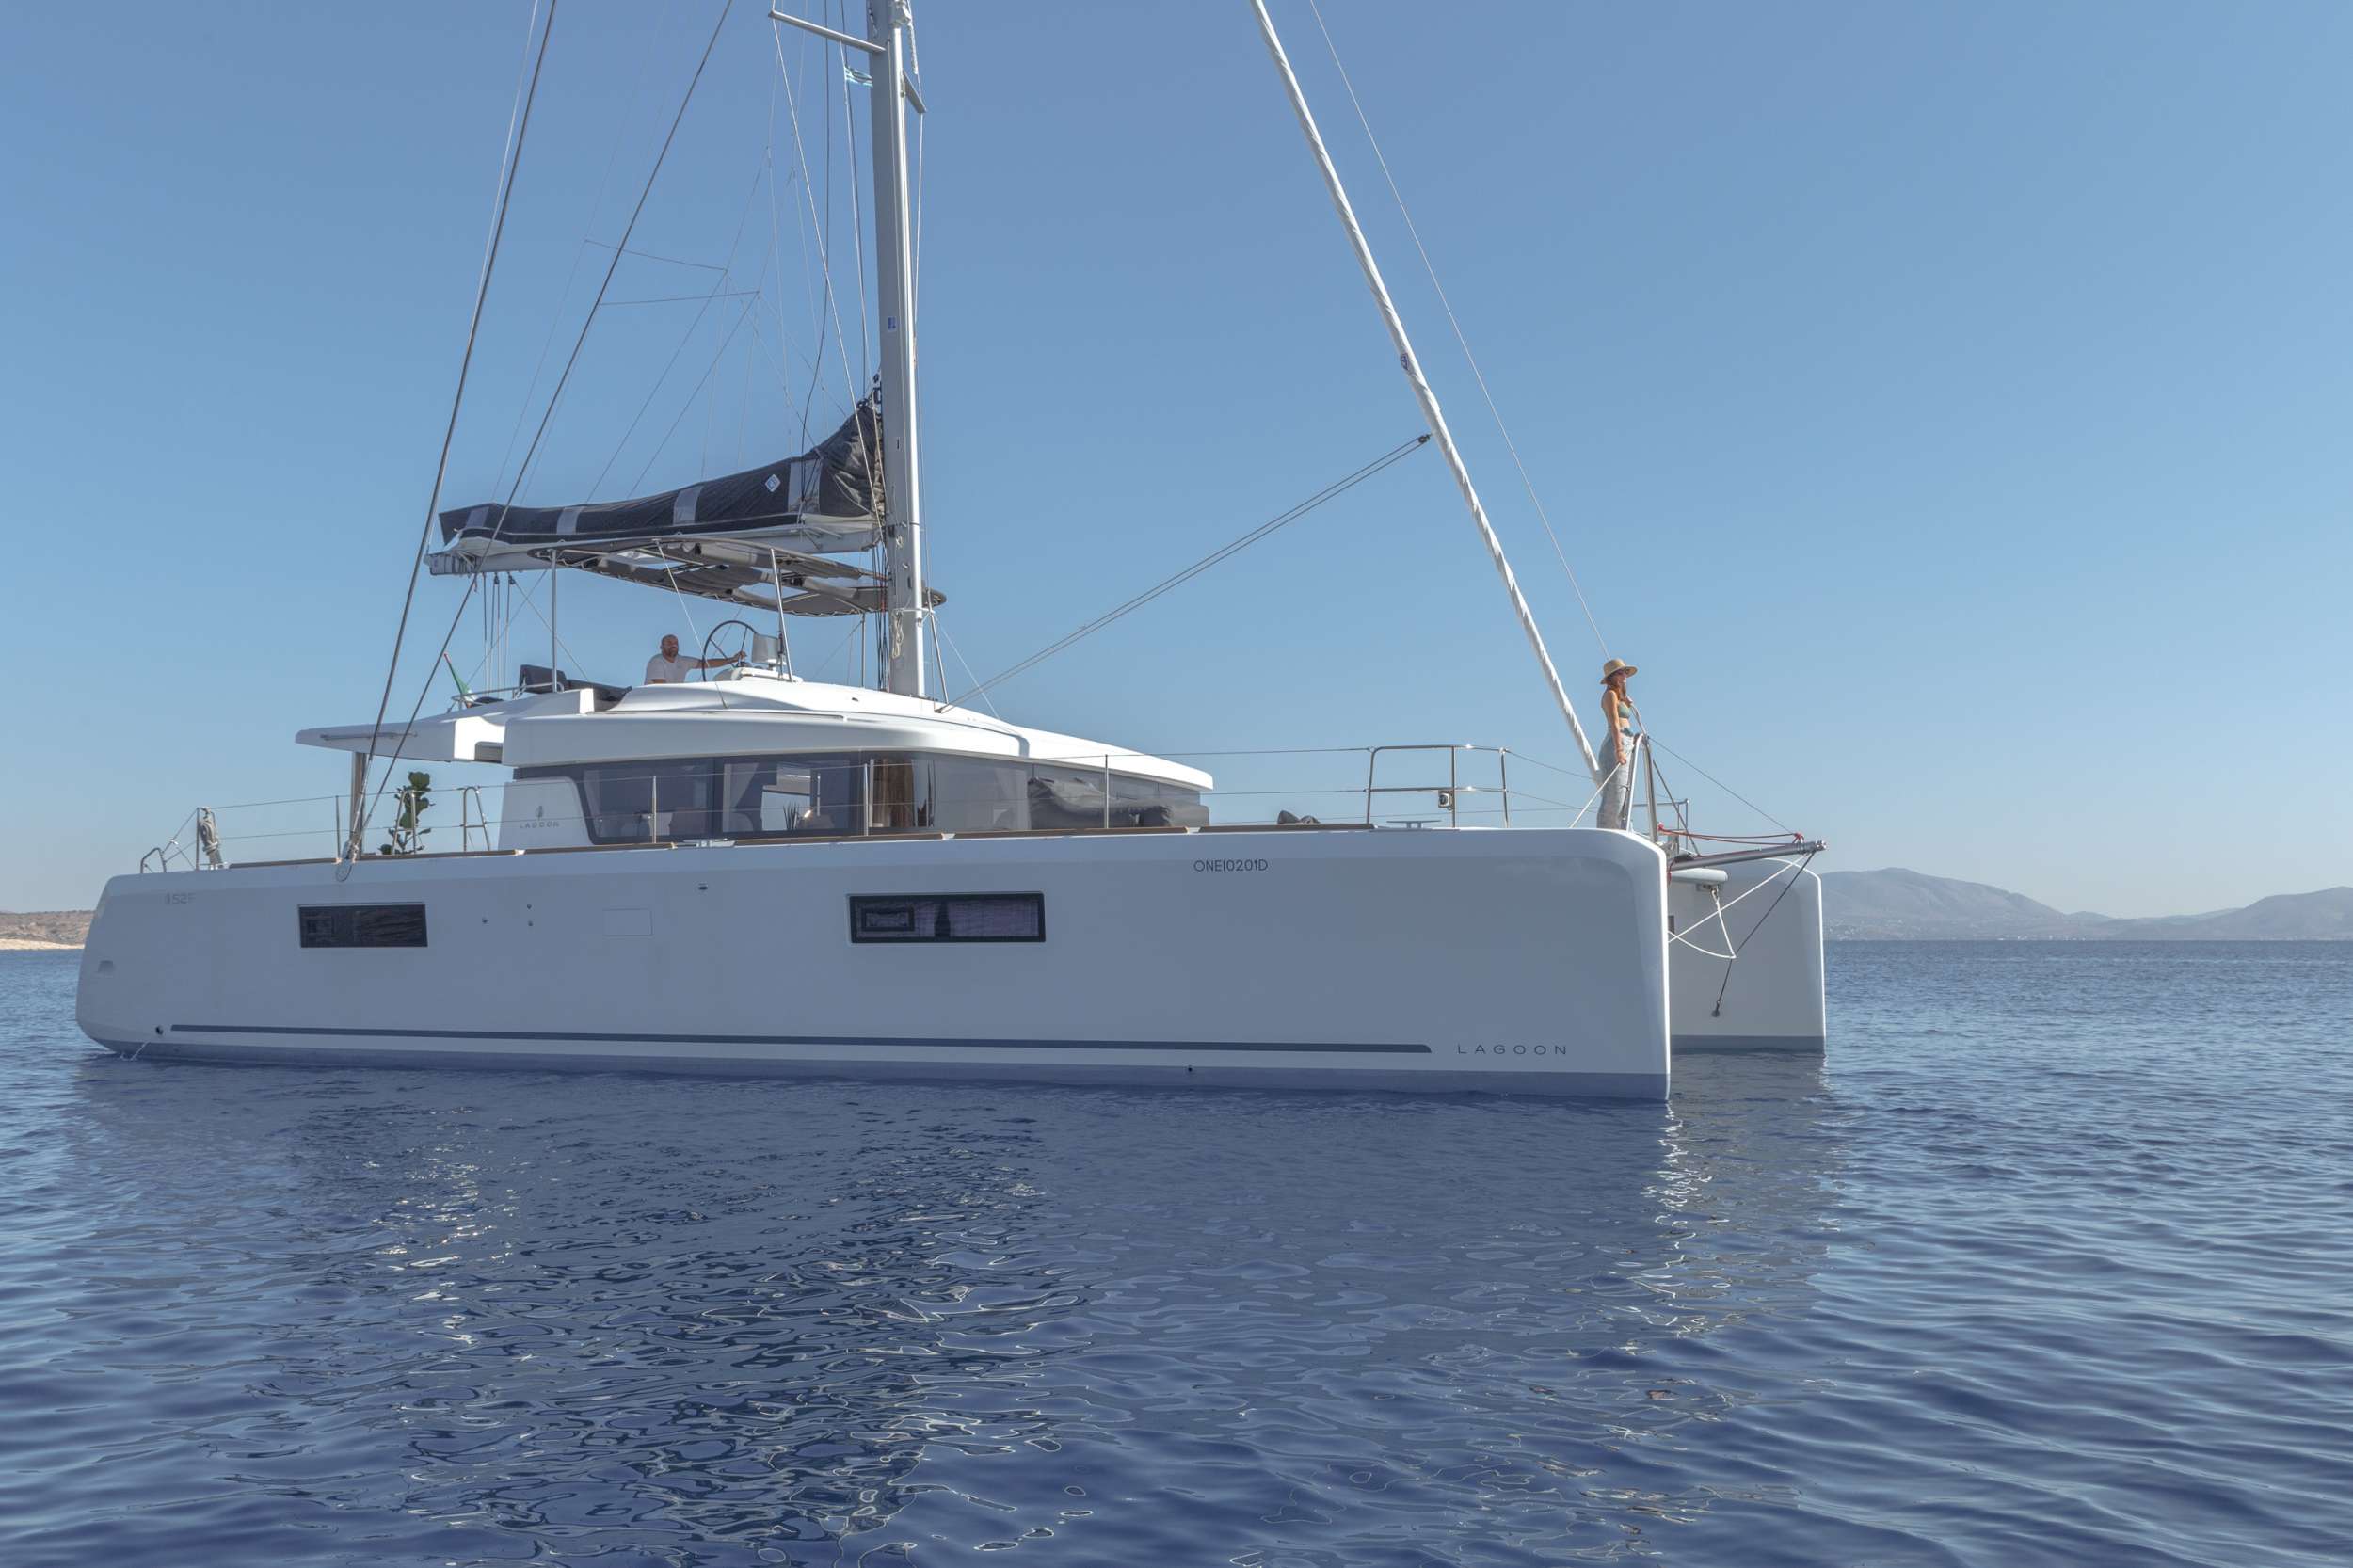 ONEIDA - Yacht Charter Zakynthos & Boat hire in Greece 1